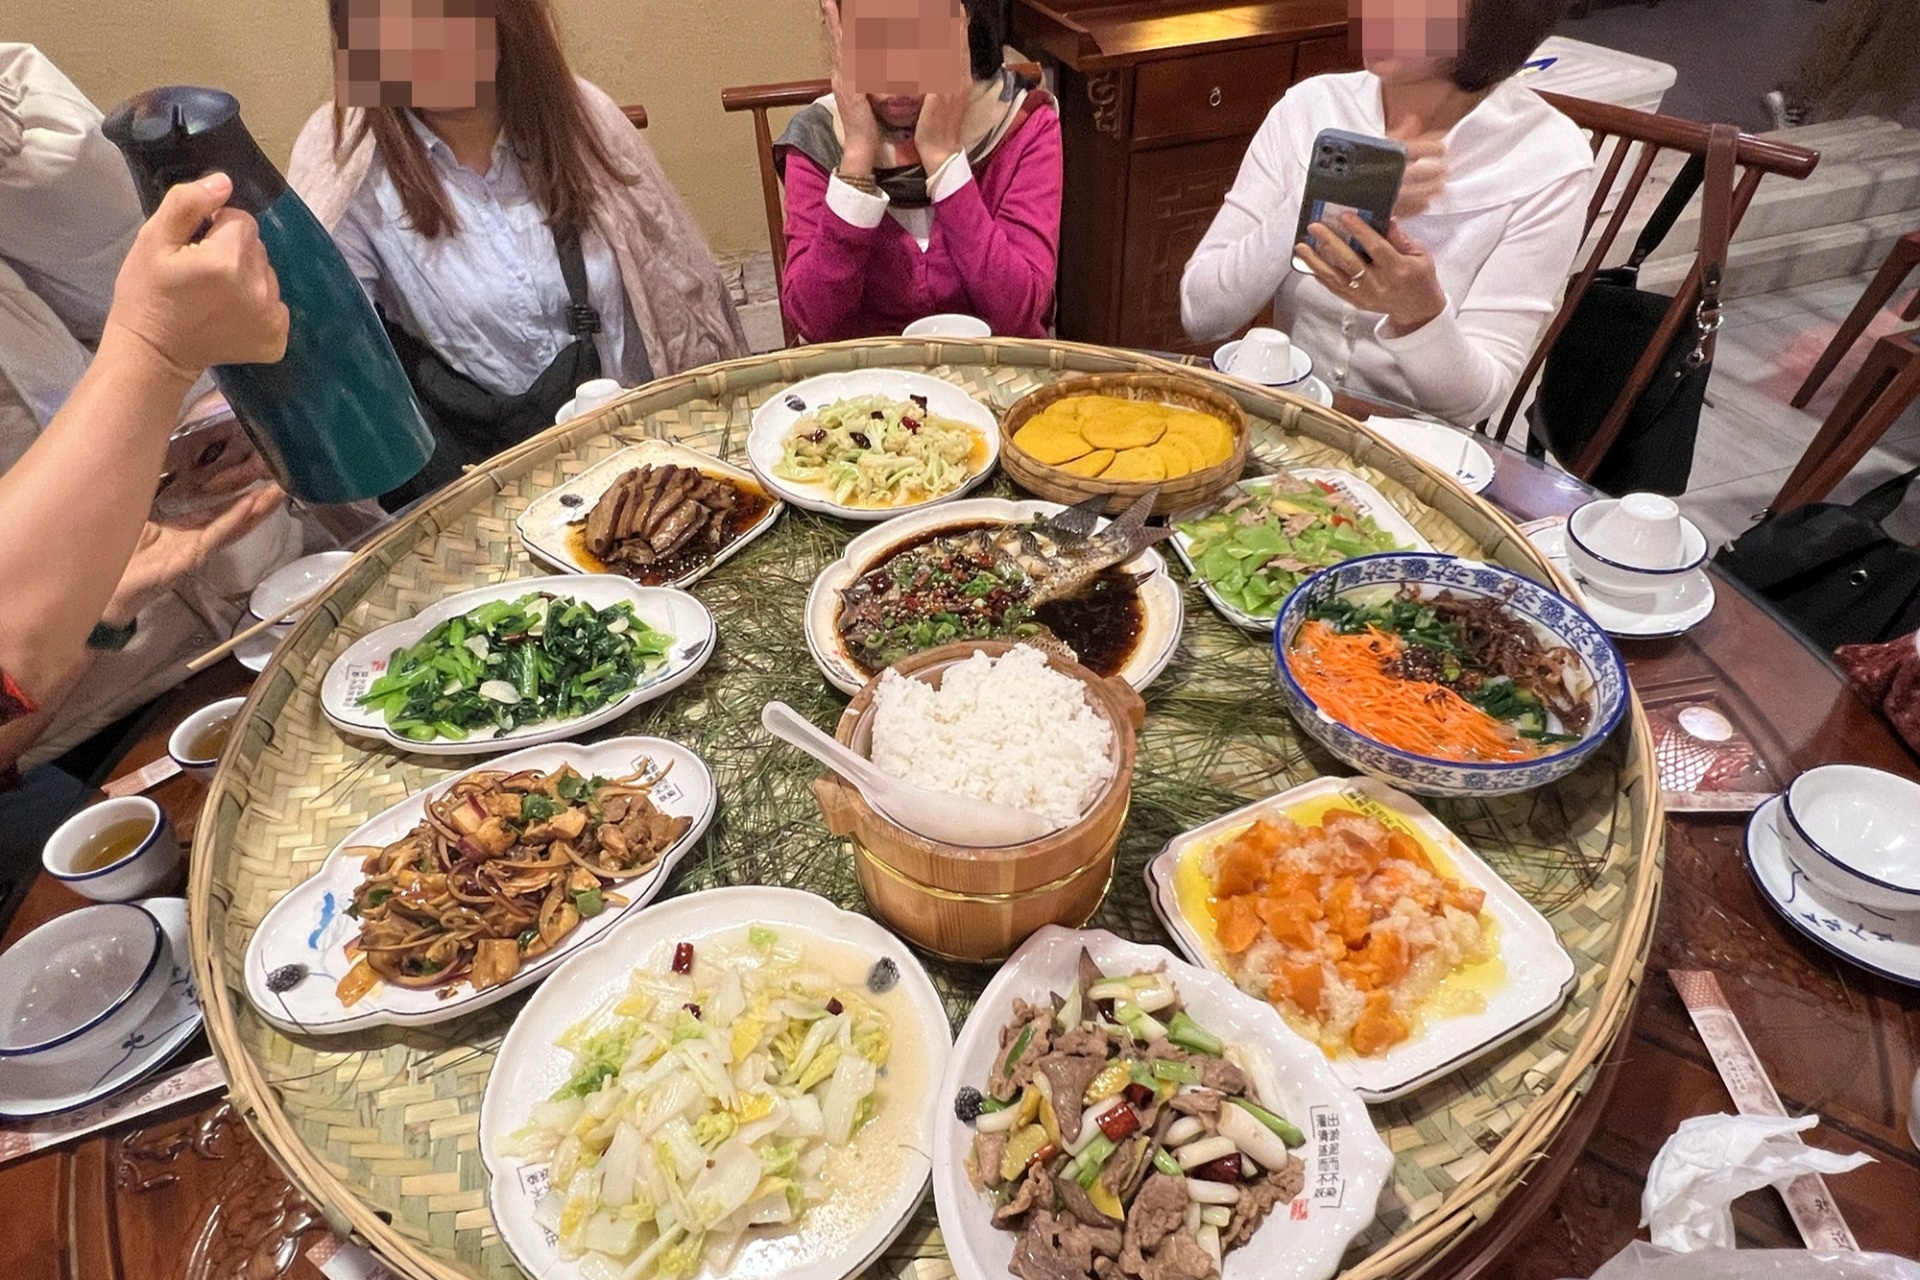 View - Bi hài tour giá rẻ Trung Quốc: Ăn cơm sinh viên, bị "bỏ bom" ở sân bay | Báo Dân trí